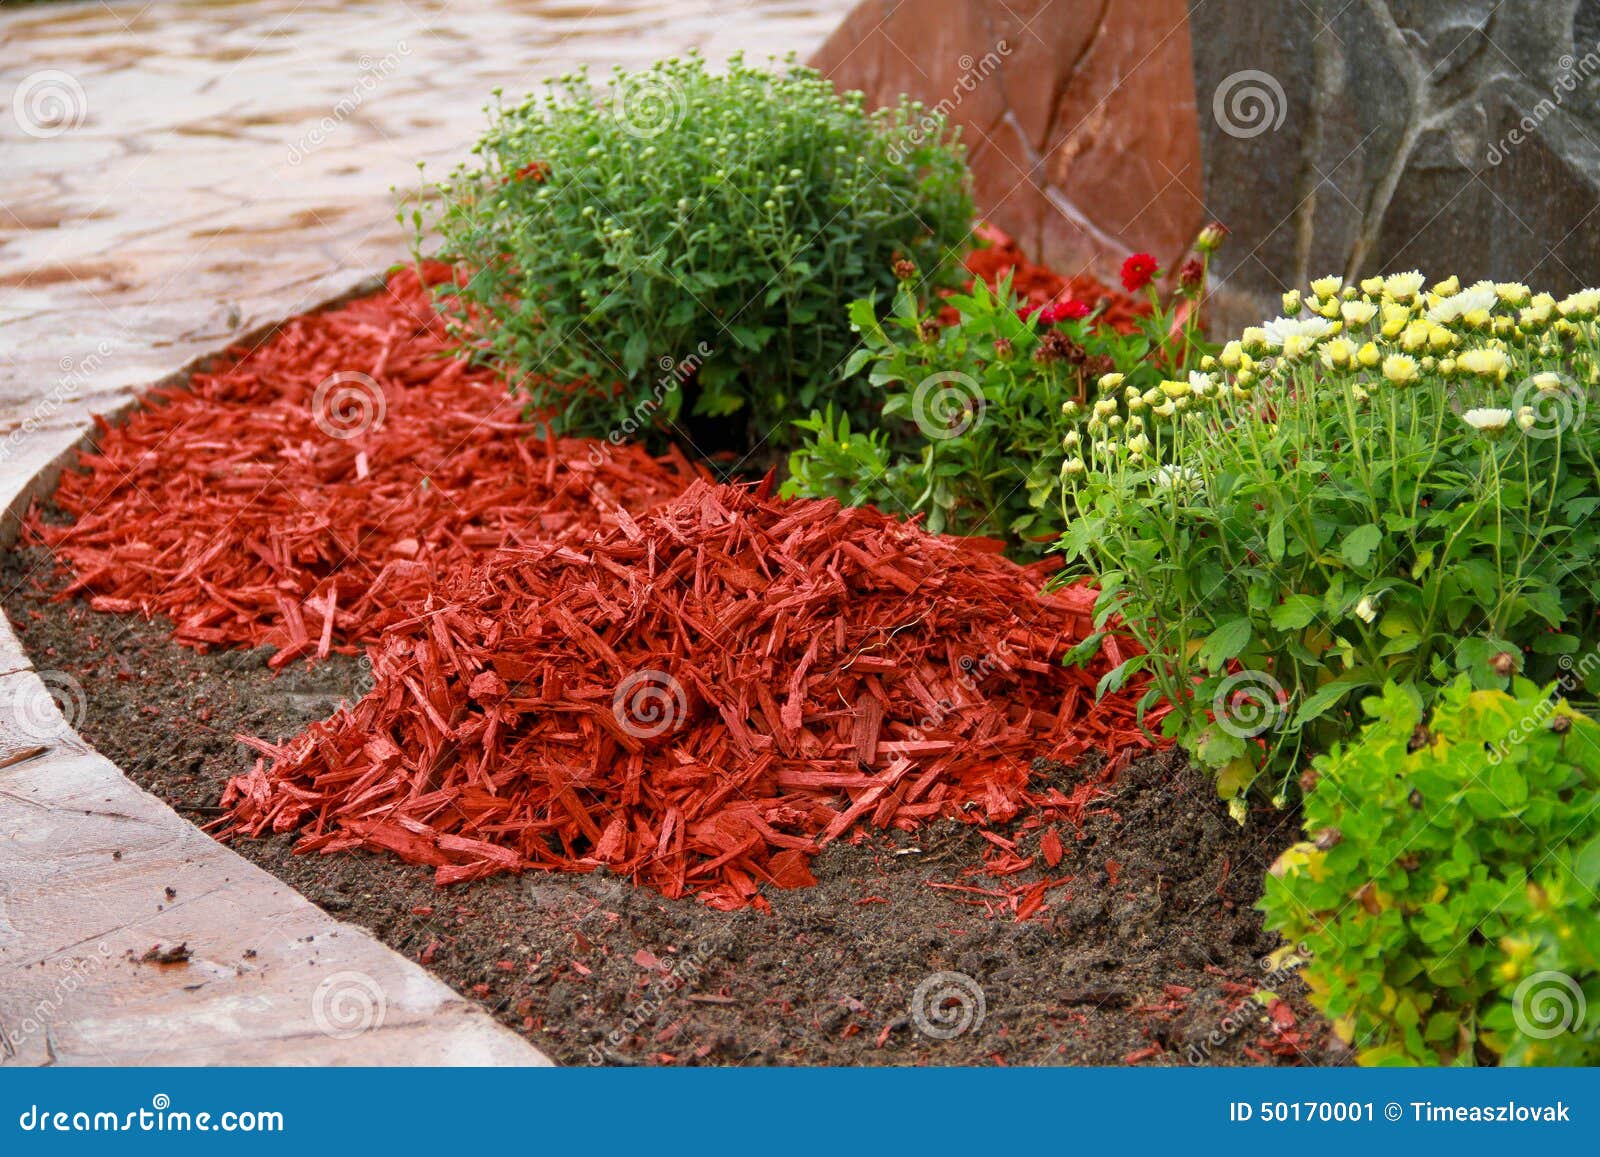 mulch red decorative bark being arranged soil under flowers 50170001